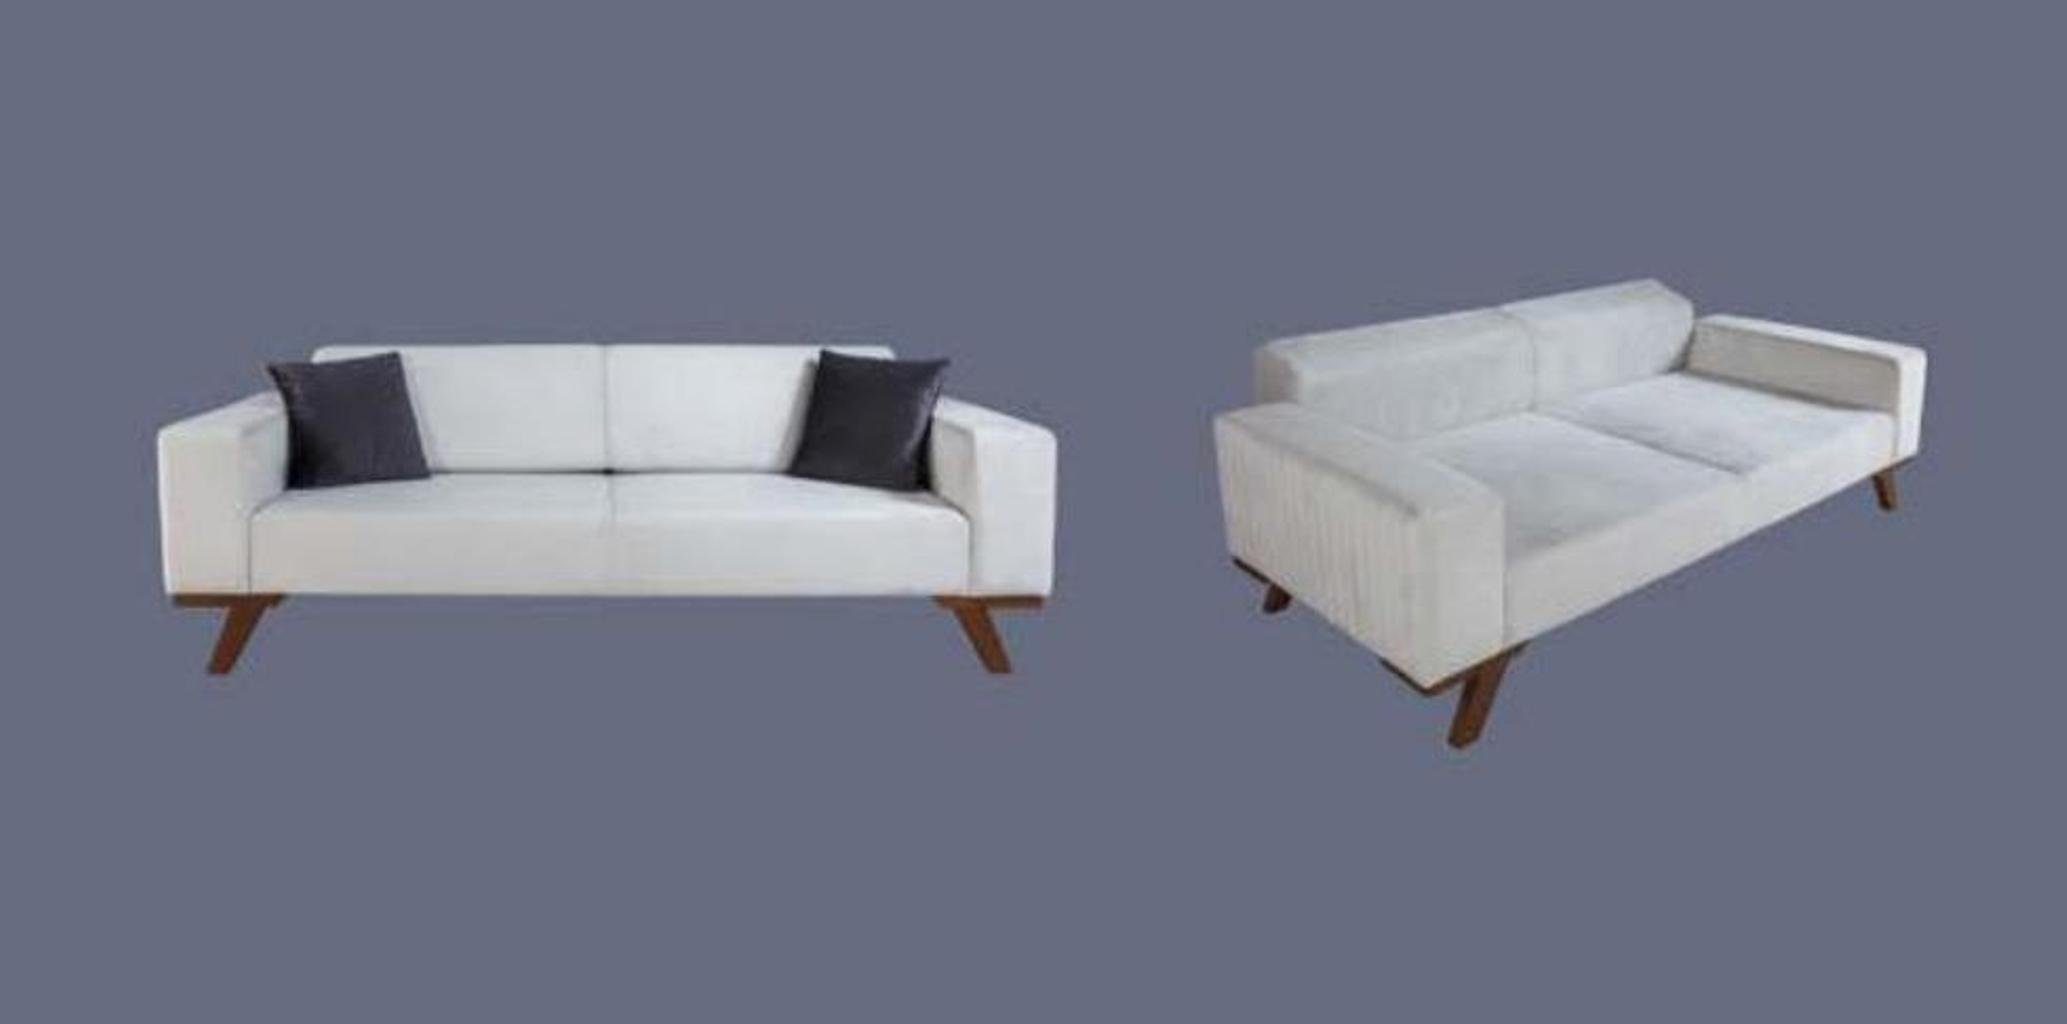 Dreisitzer Möbel, Sofa JVmoebel Made Sofa Modern Couch Sofas Polster in Couchen Europe